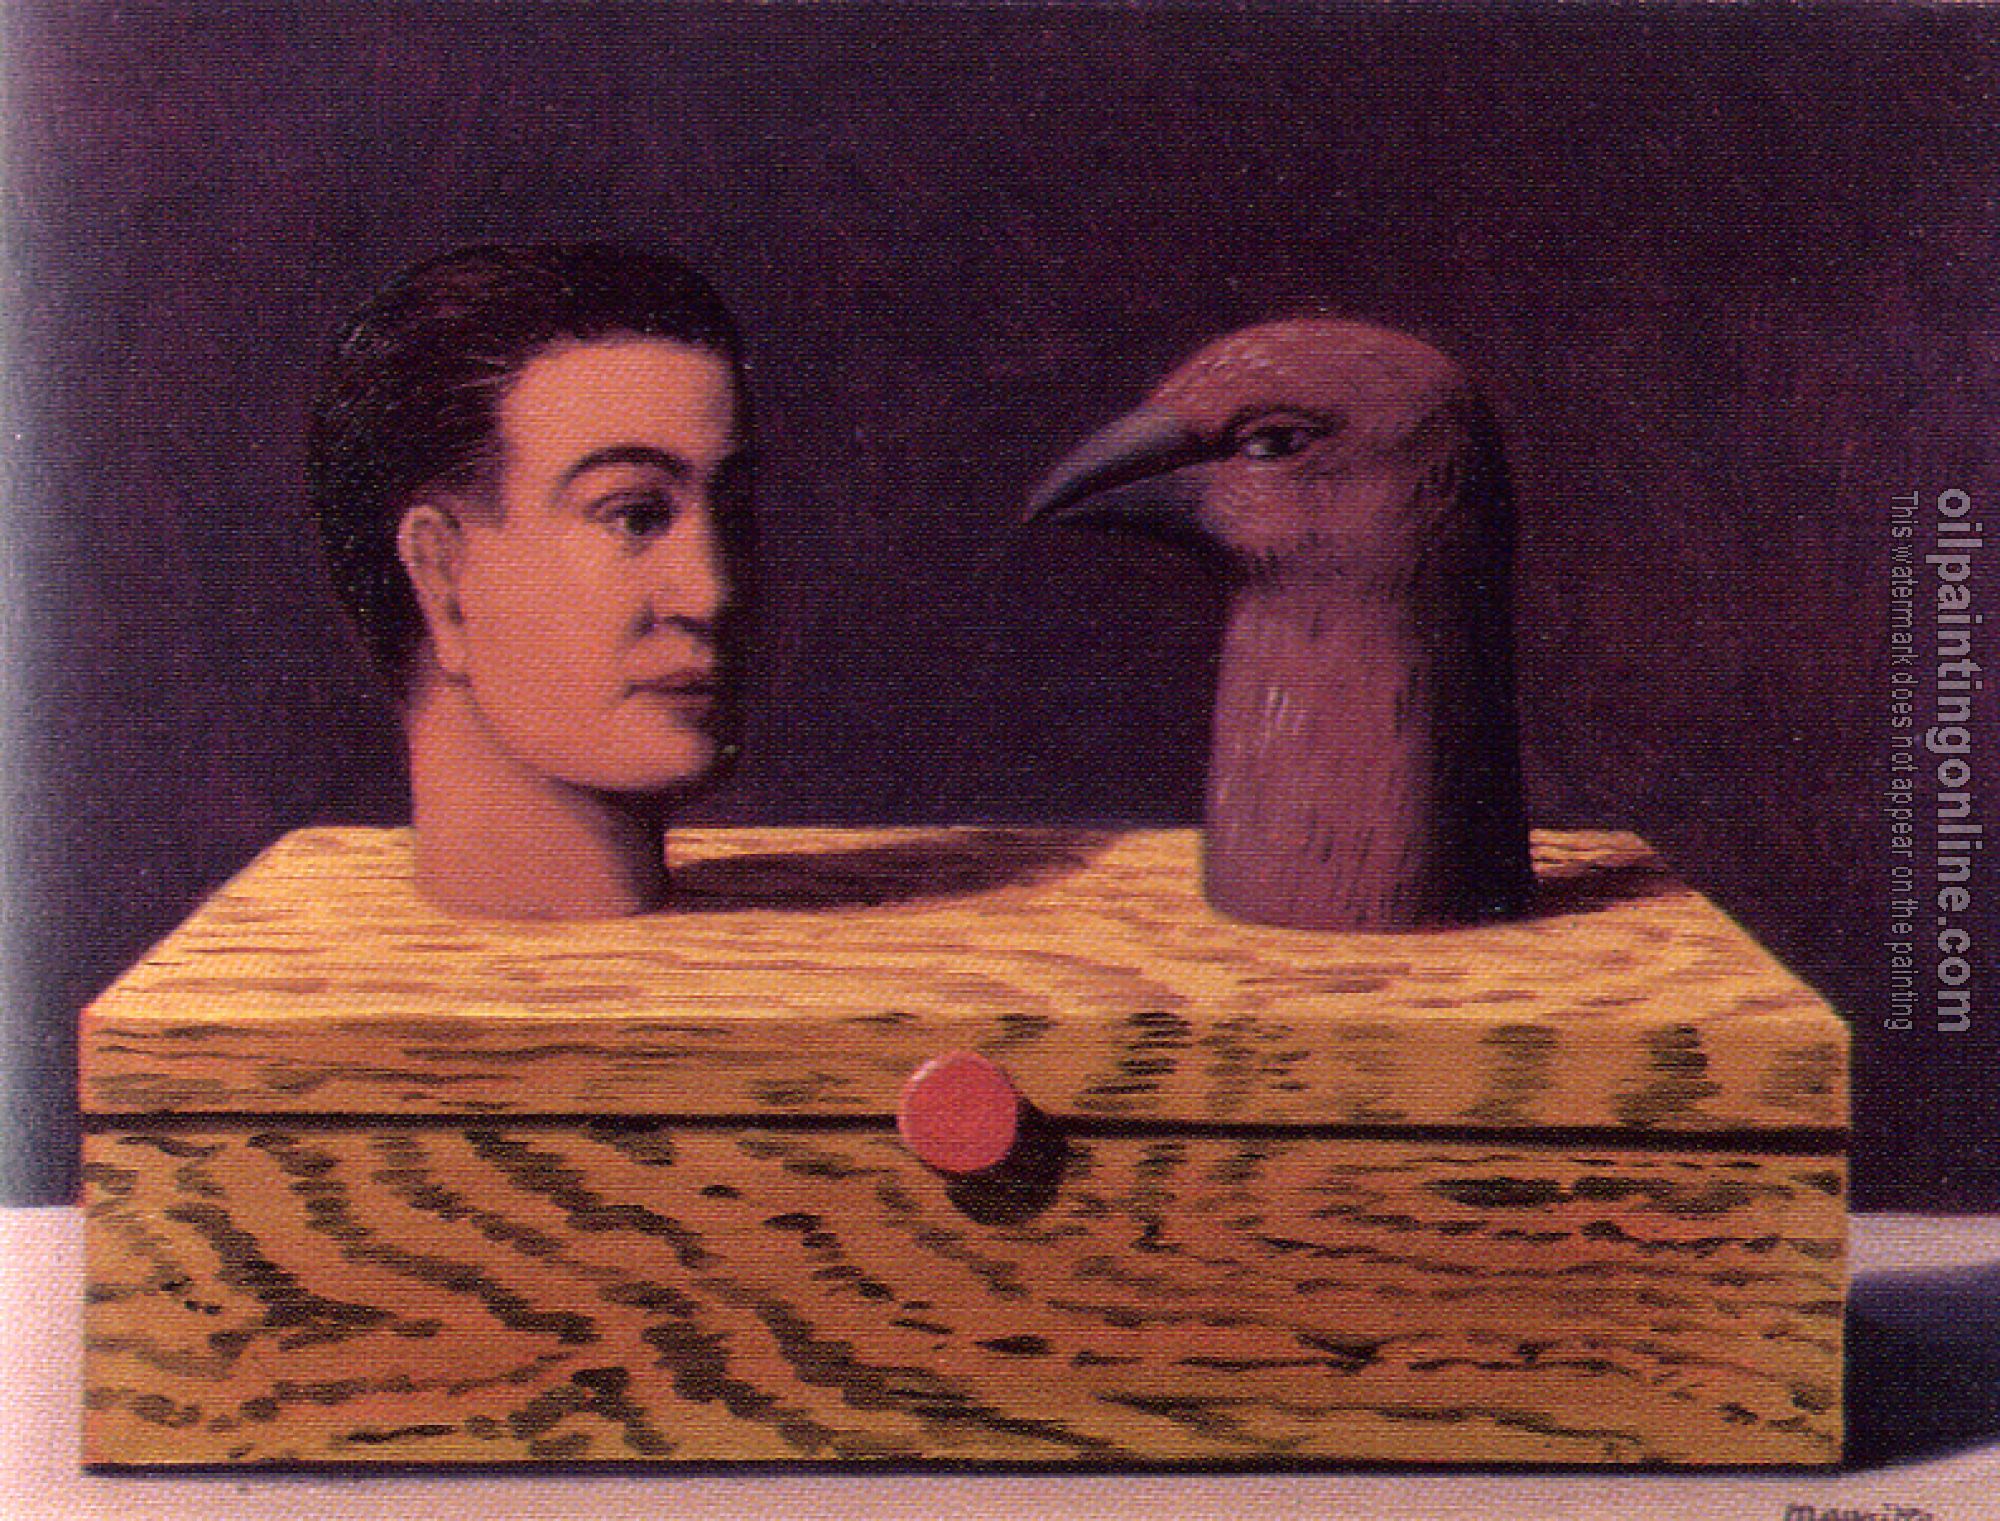 Magritte, Rene - gem stones